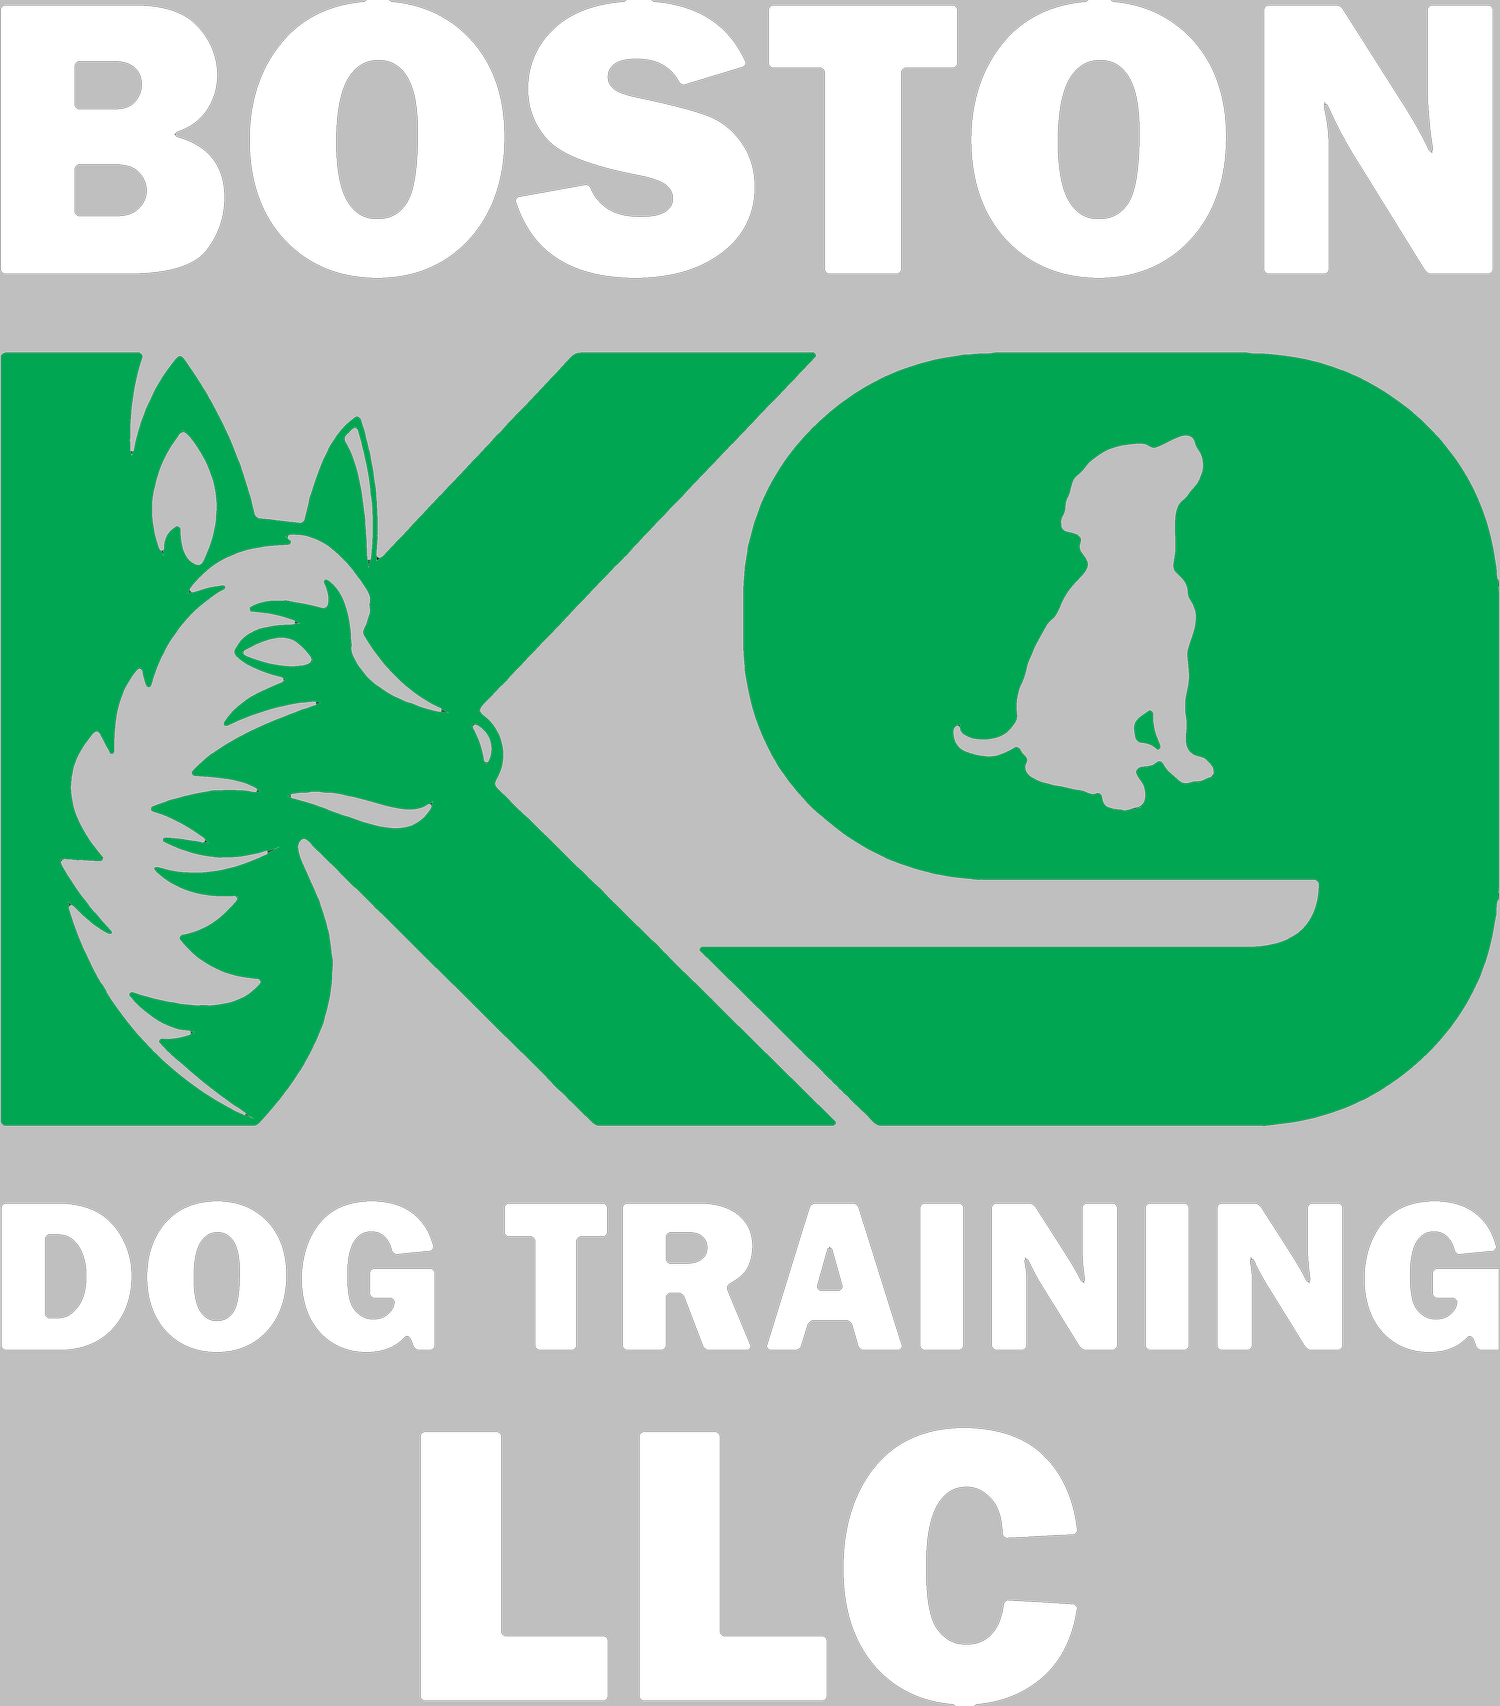 BOSTON K9 DOG TRAINING